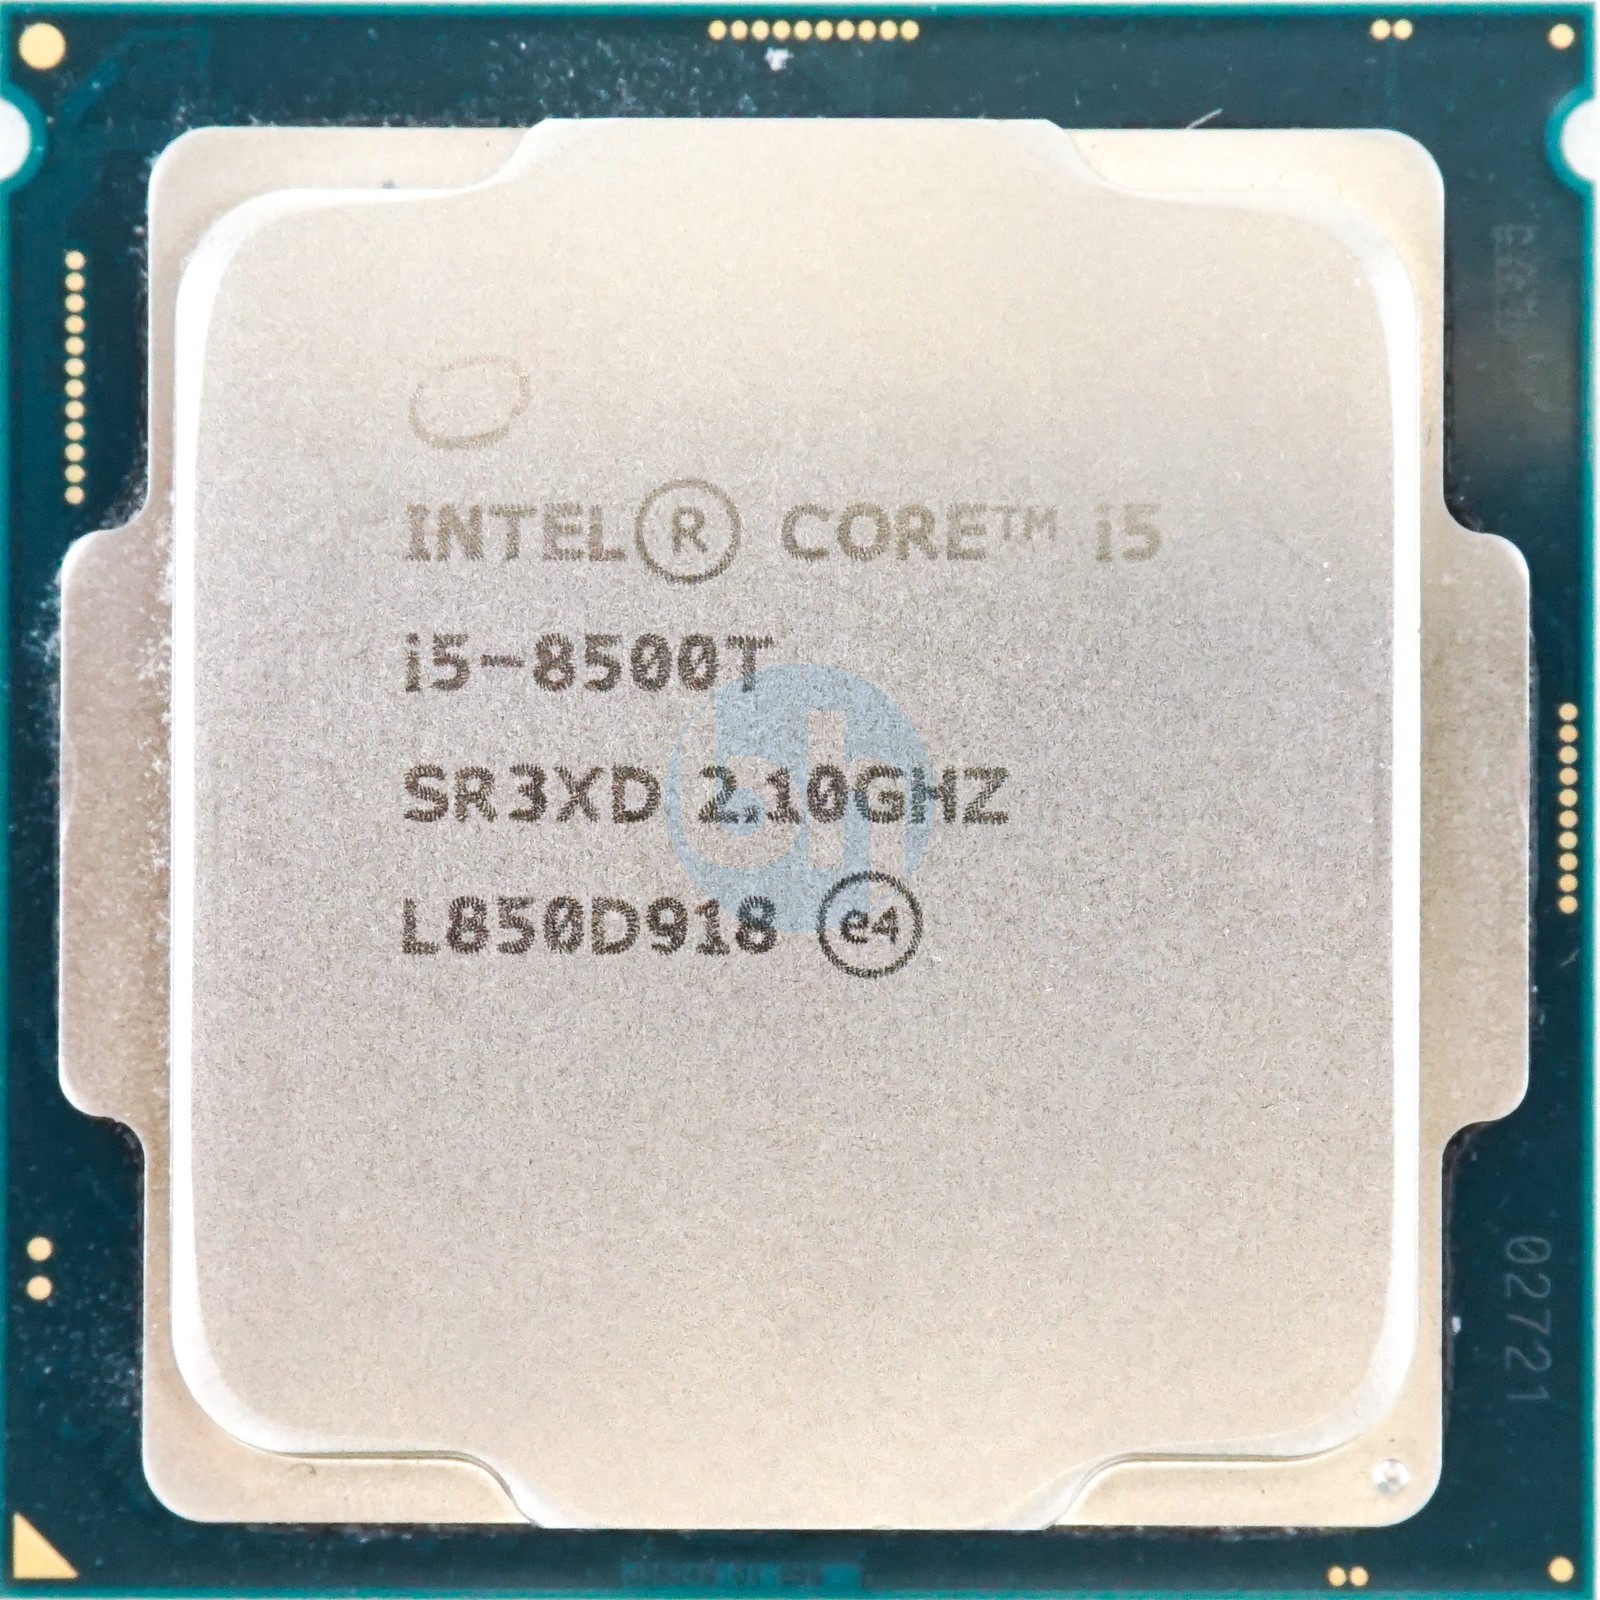 Intel Core i5-8500T (SR3XD) 2.10Ghz 6-Core LGA1151 25W 9MB CPU